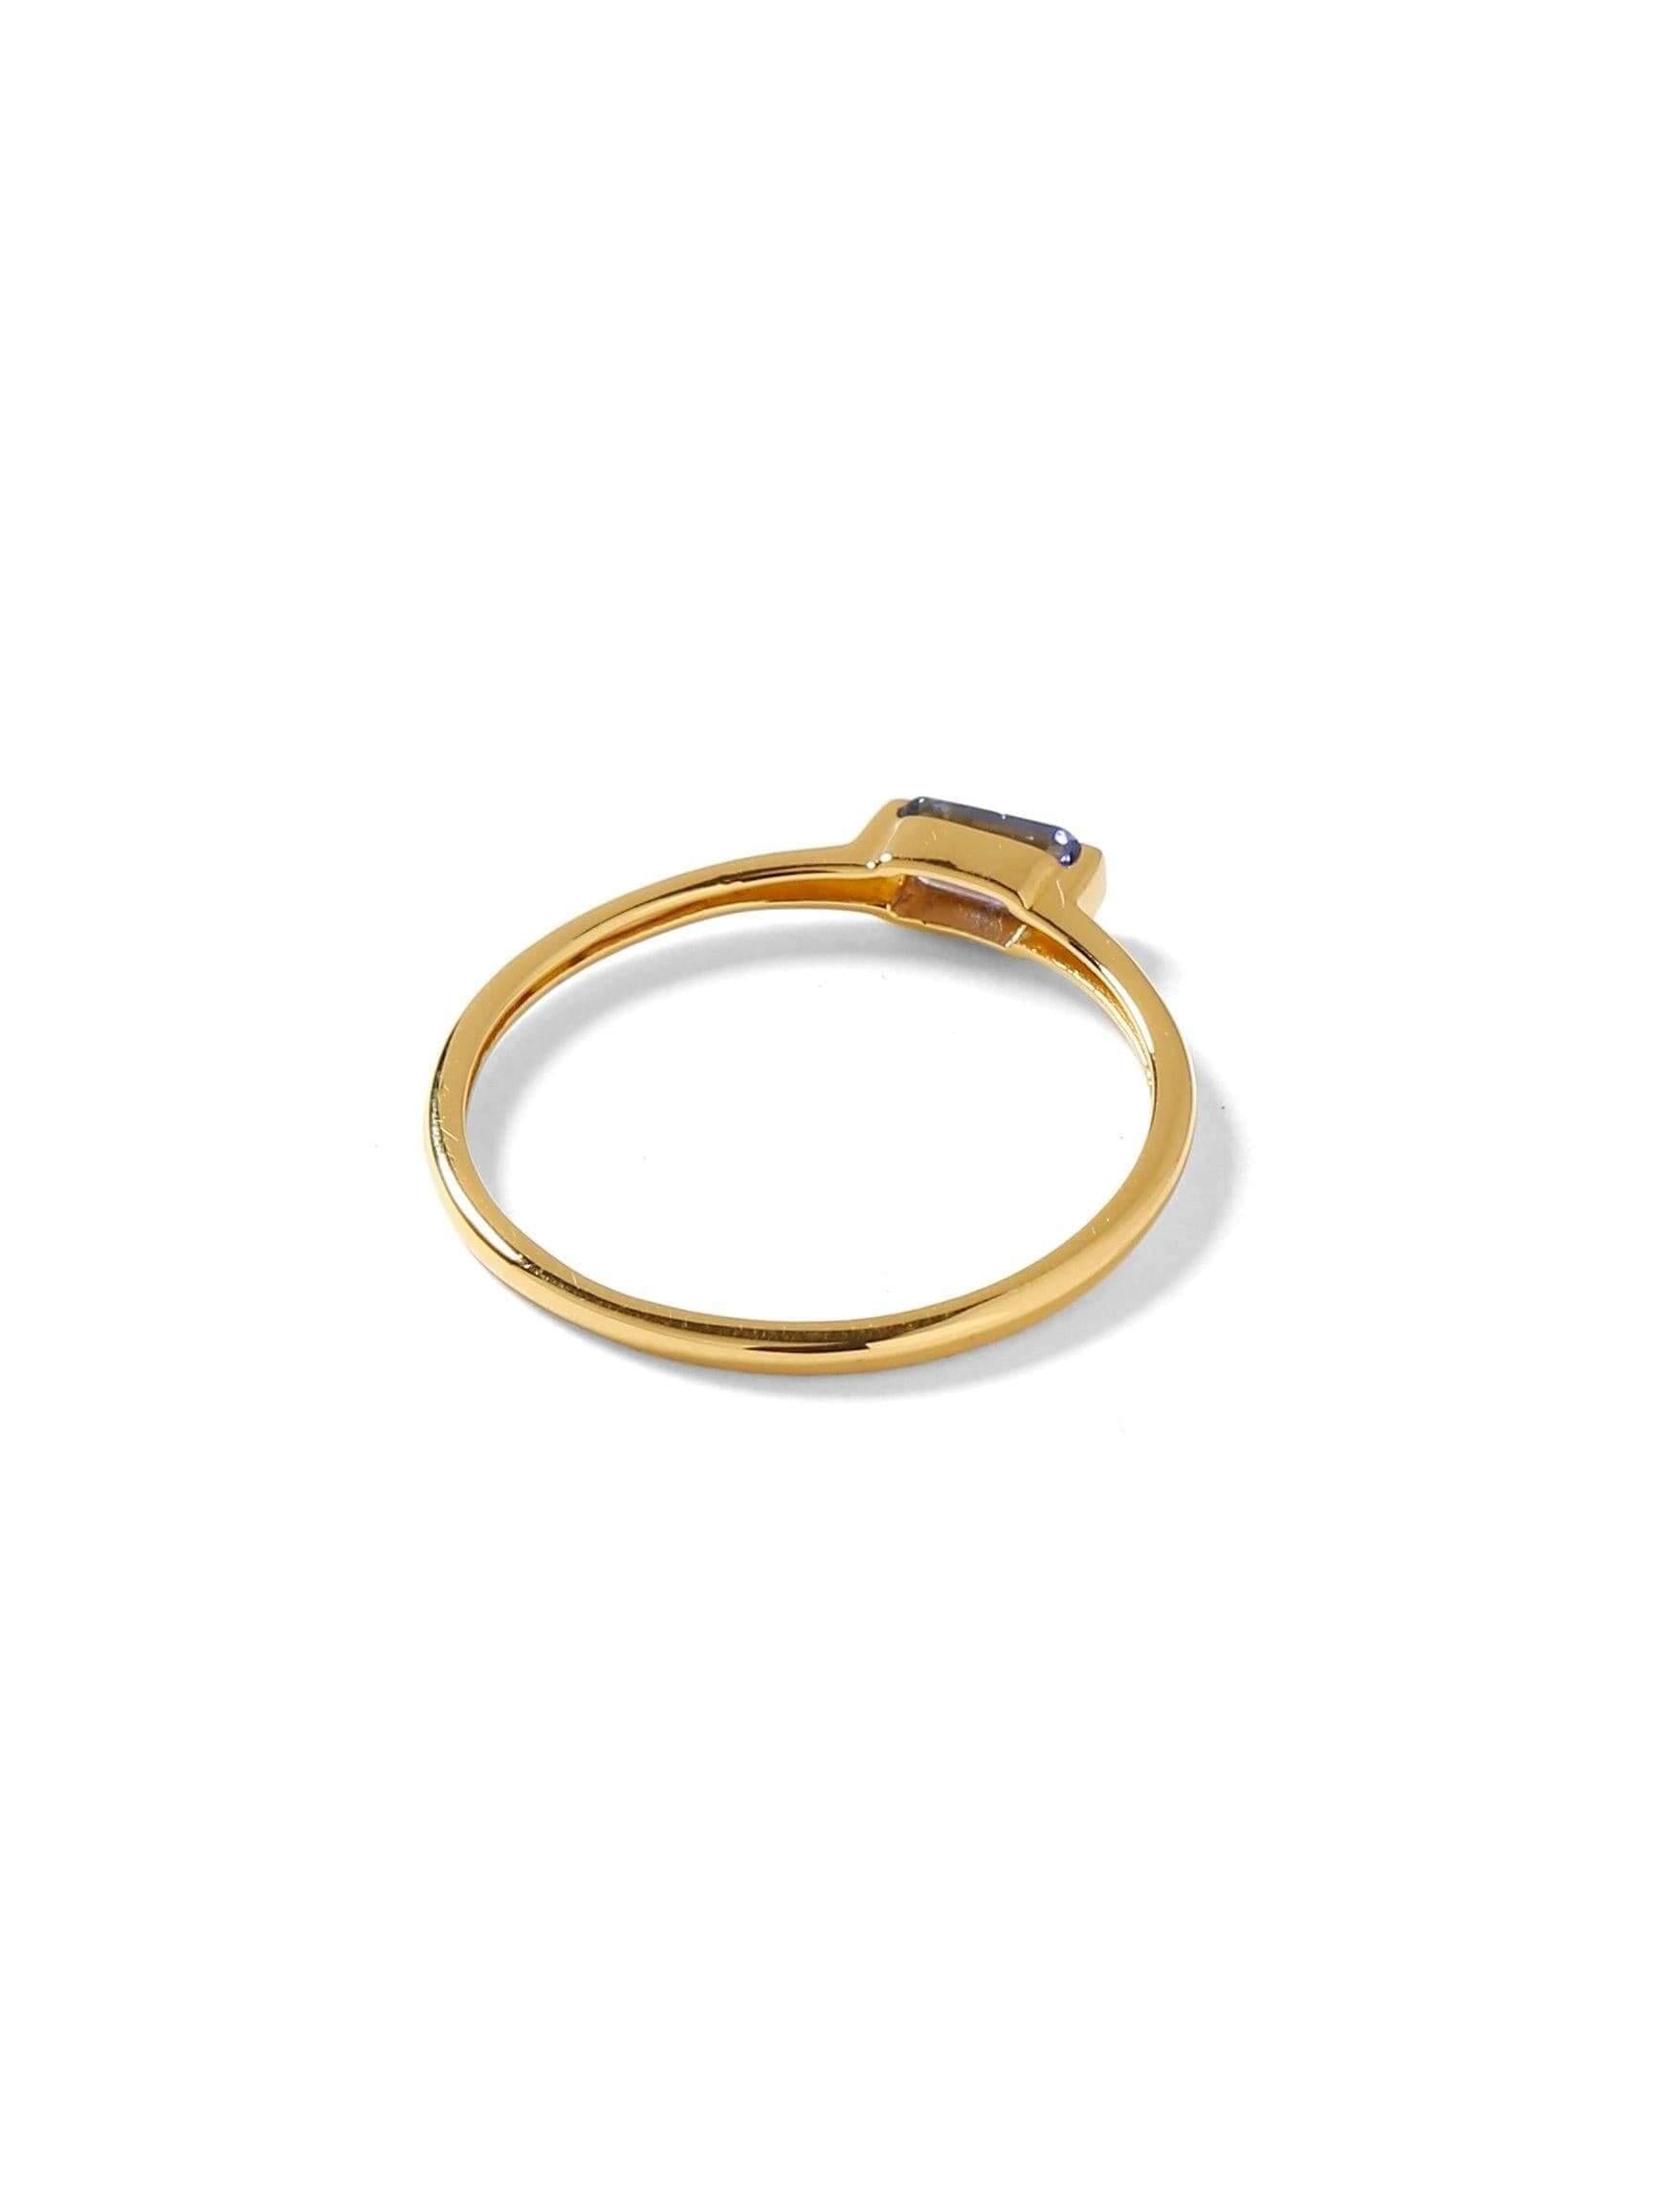 0.34 Ct Tanzanite Solid 10k Yellow Gold Ring Jewelry - YoTreasure